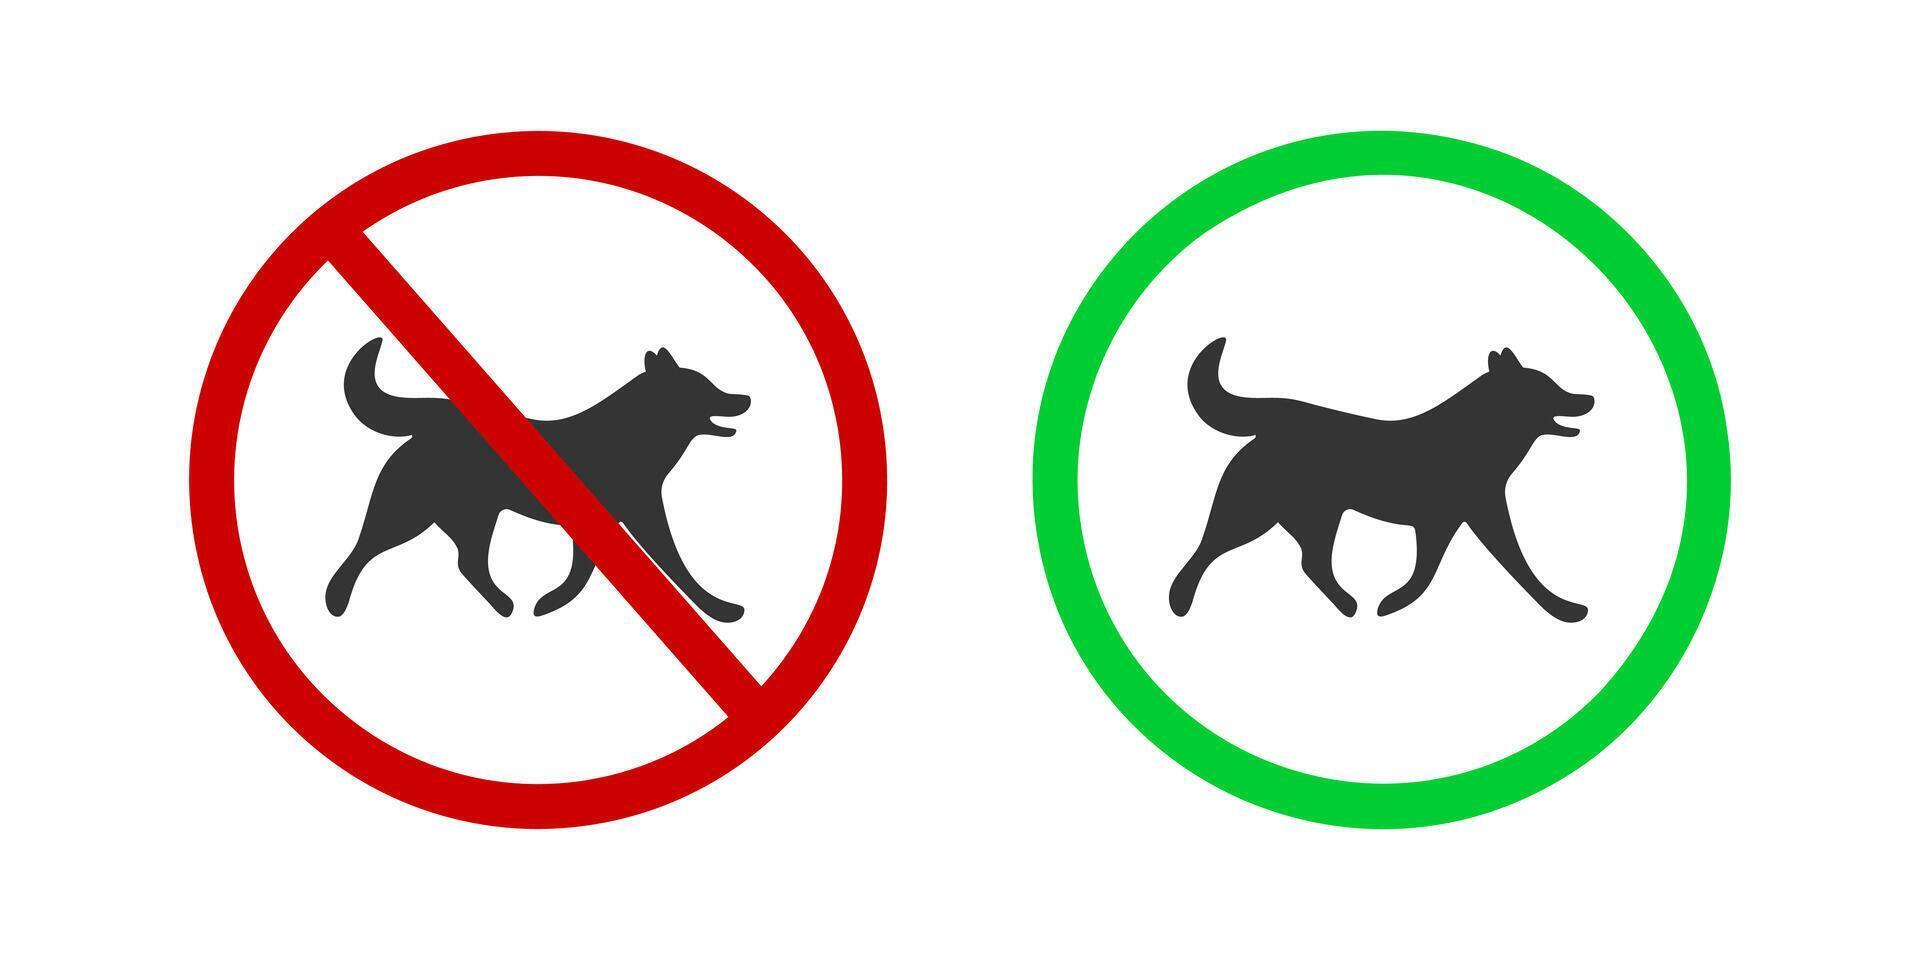 hundar förbjuden och tillåten ikon. husdjur gående förbjuda och vänlig zon piktogram. hund silhuett i röd förbjuden och grön godkänd tecken vektor